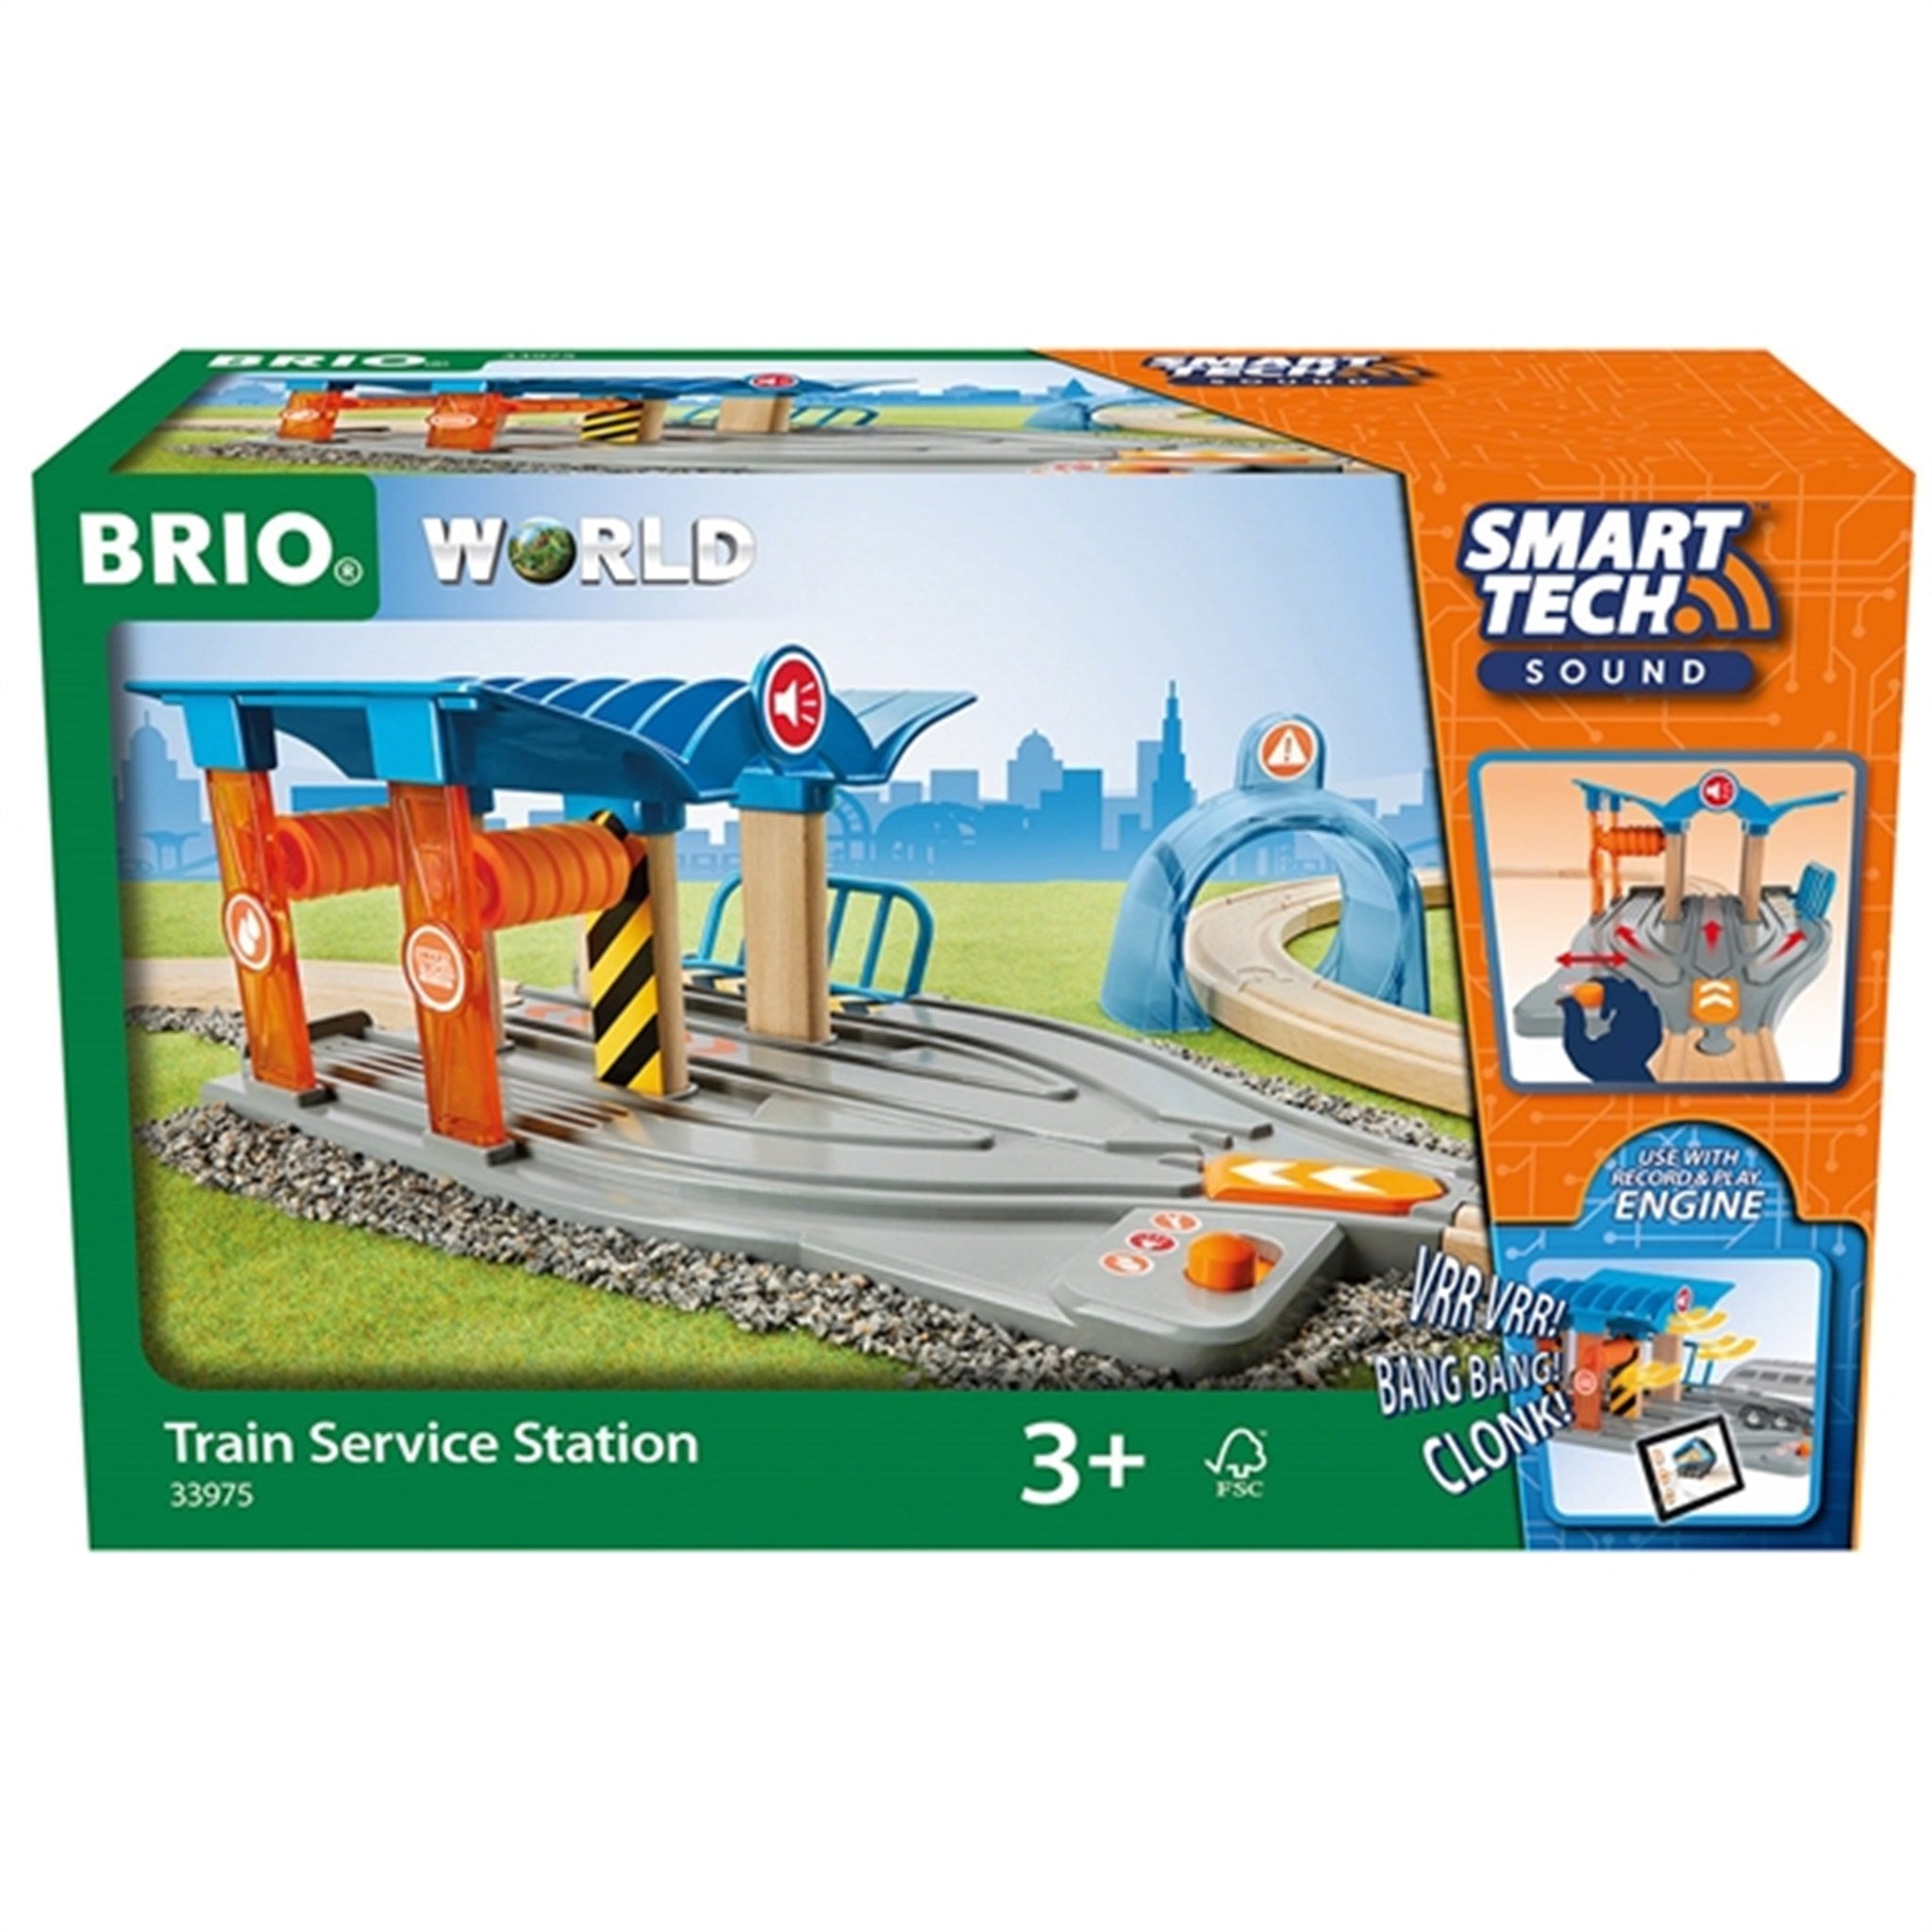 BRIO® Smart Tech Sound Train Service Station 2